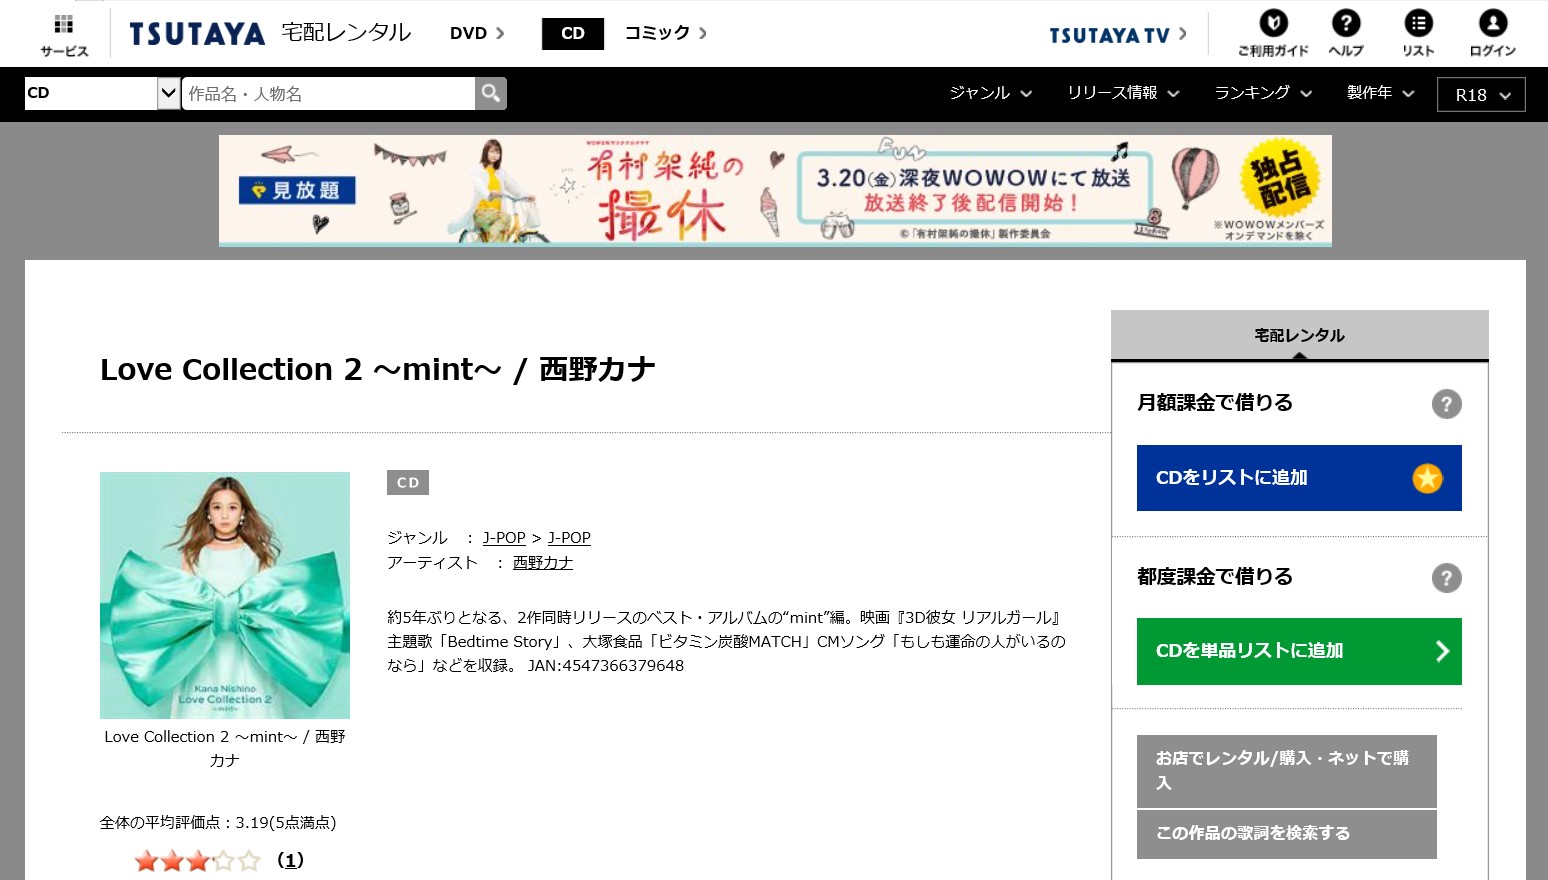 西野カナ Love Collection 2 Mint アルバム曲をmp3でダウンロードしてフル視聴する方法 音楽の森